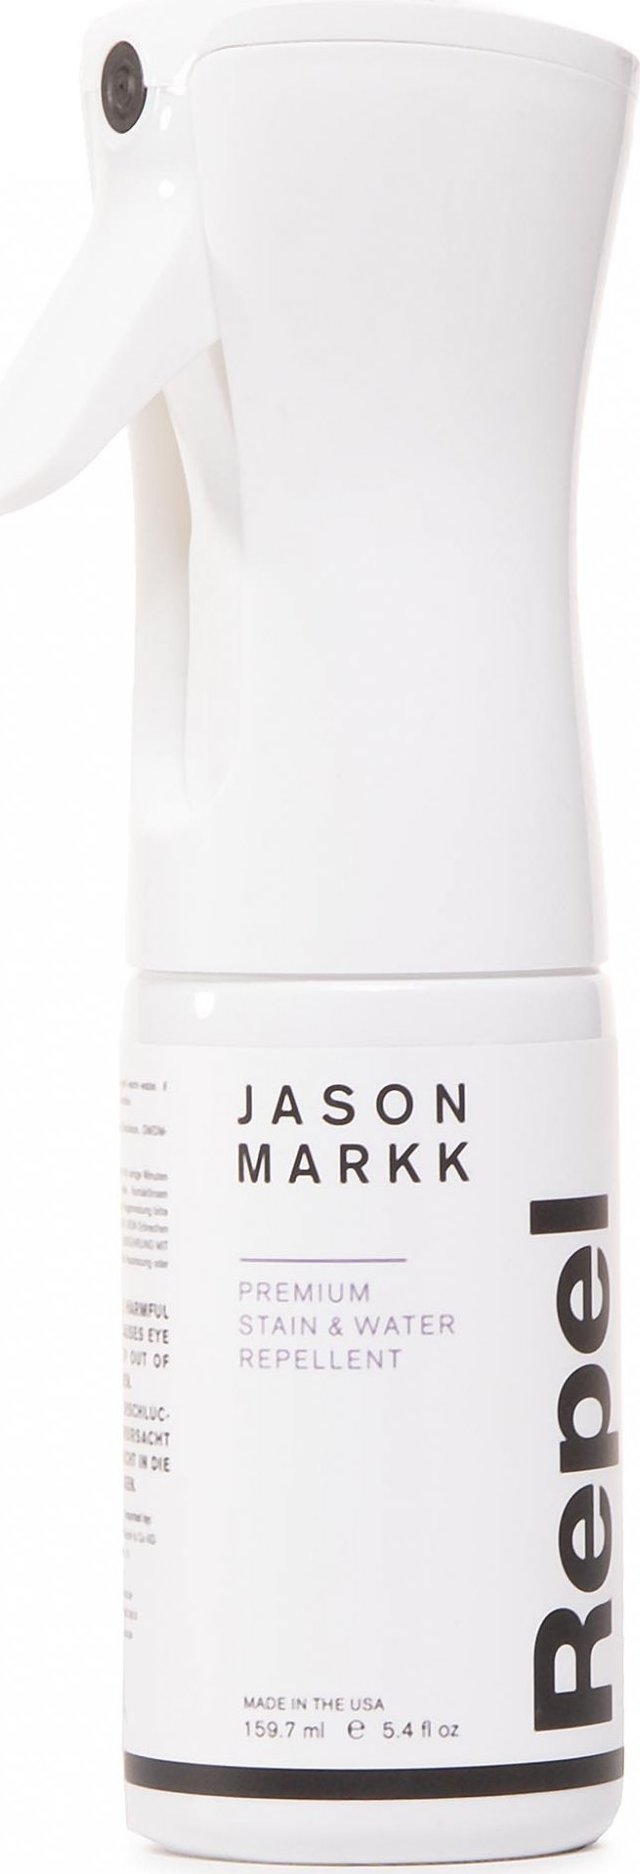 Jason Markk Premium Stain & Water Repellent JM102003-D